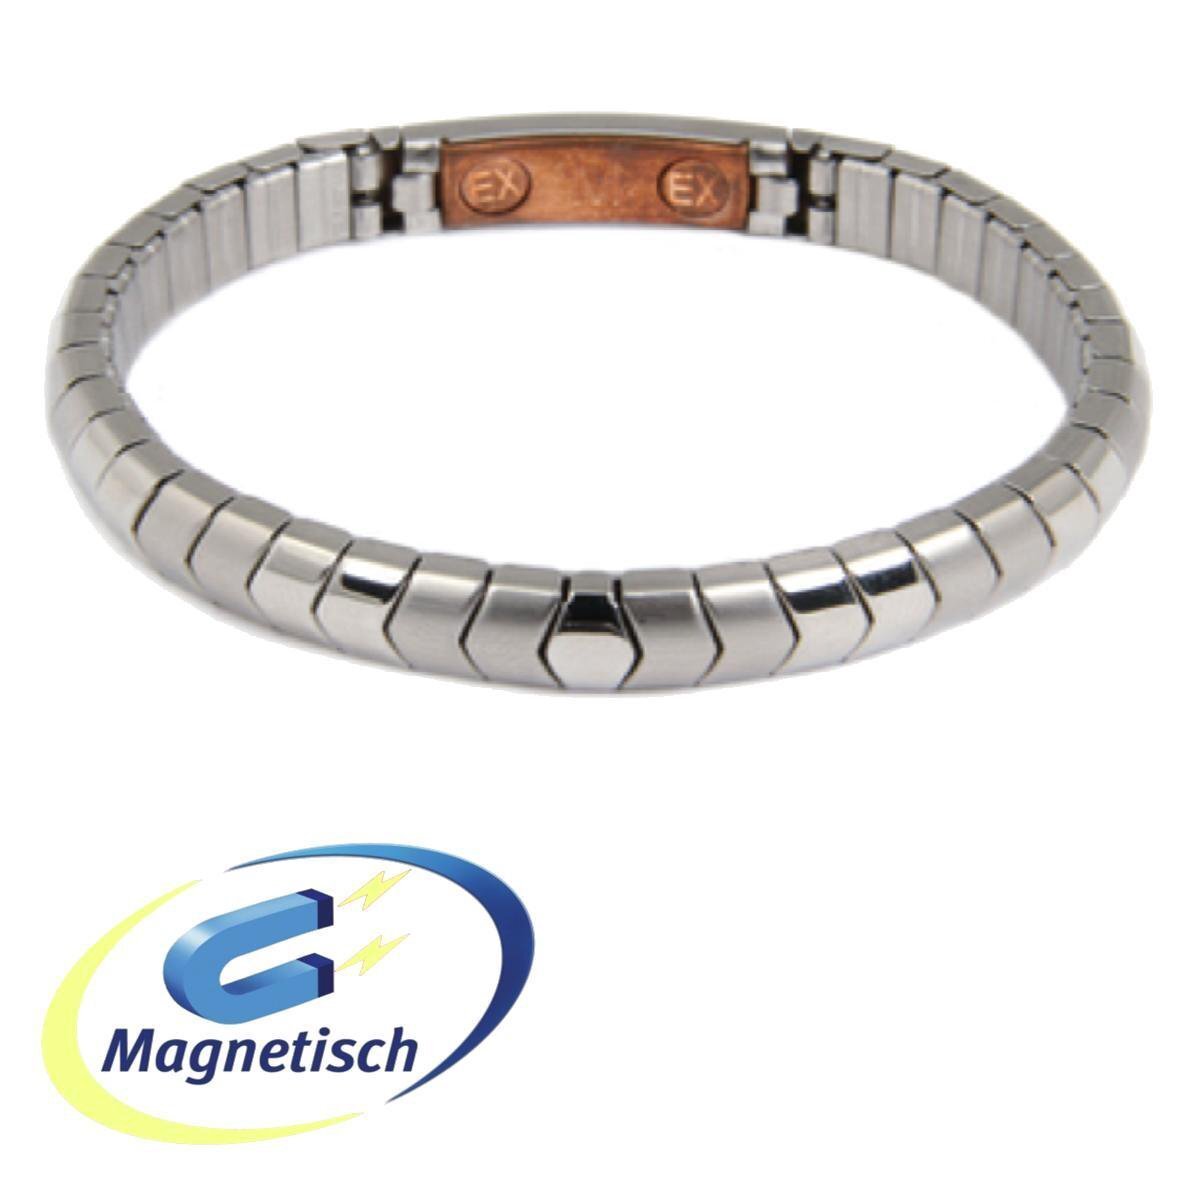 Weekendtas minimum Variant Energetix Magneet Armband Flex-model (439-3) Koper en Magneten.  Zilverkleurig mat/glanzende Magnetische Armband